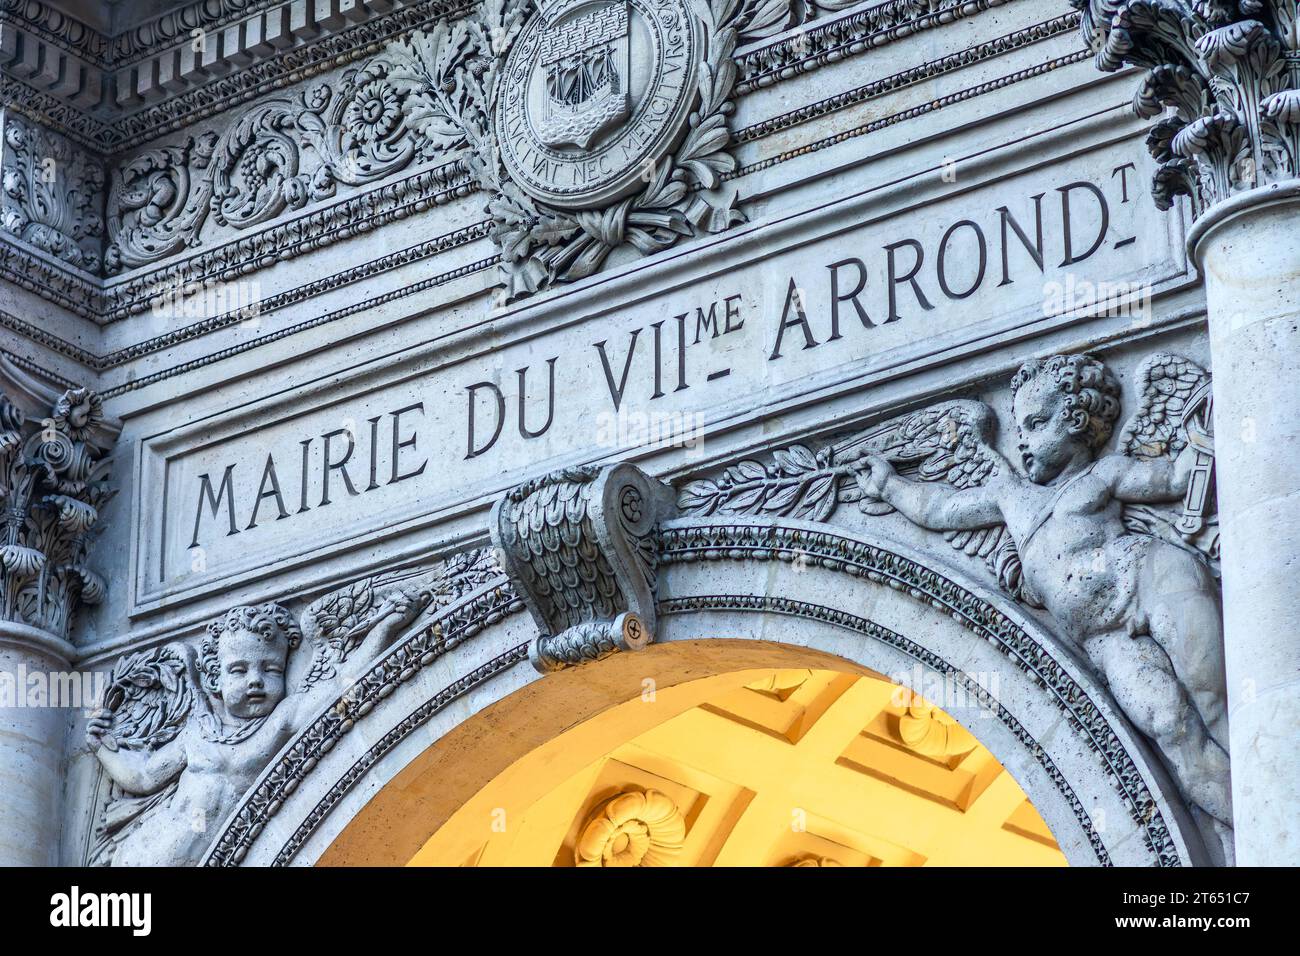 Klassische Details über dem Eingang zum Mairie (Rathaus) des 7. Arrondissements von Paris, Frankreich. Stockfoto